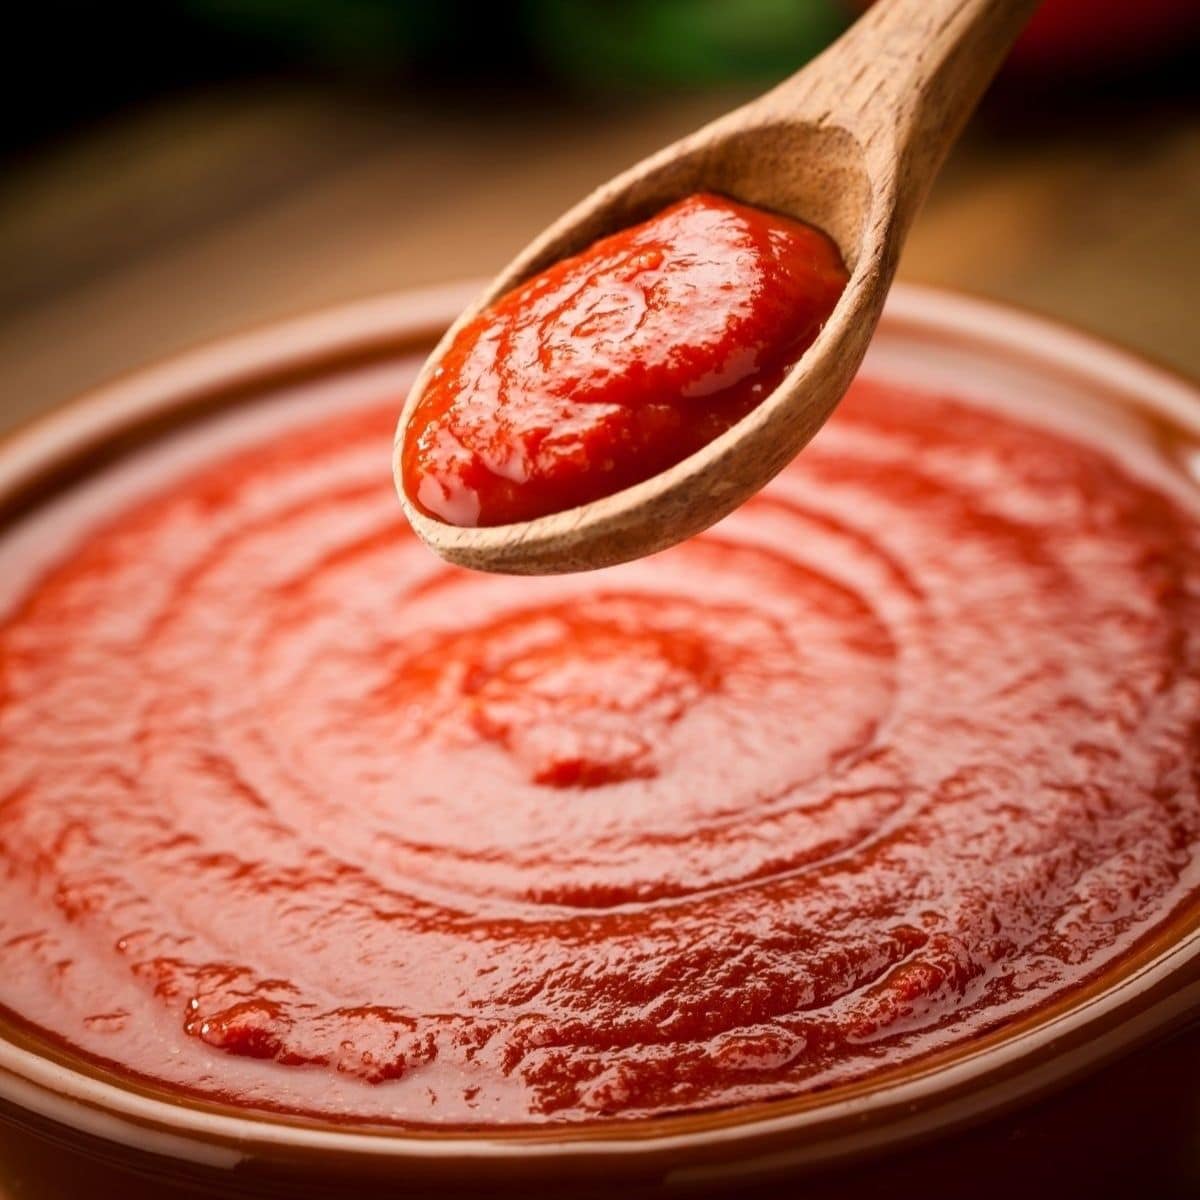 Pengganti saus tomat terbaik untuk digunakan dalam resep memasak apa pun.